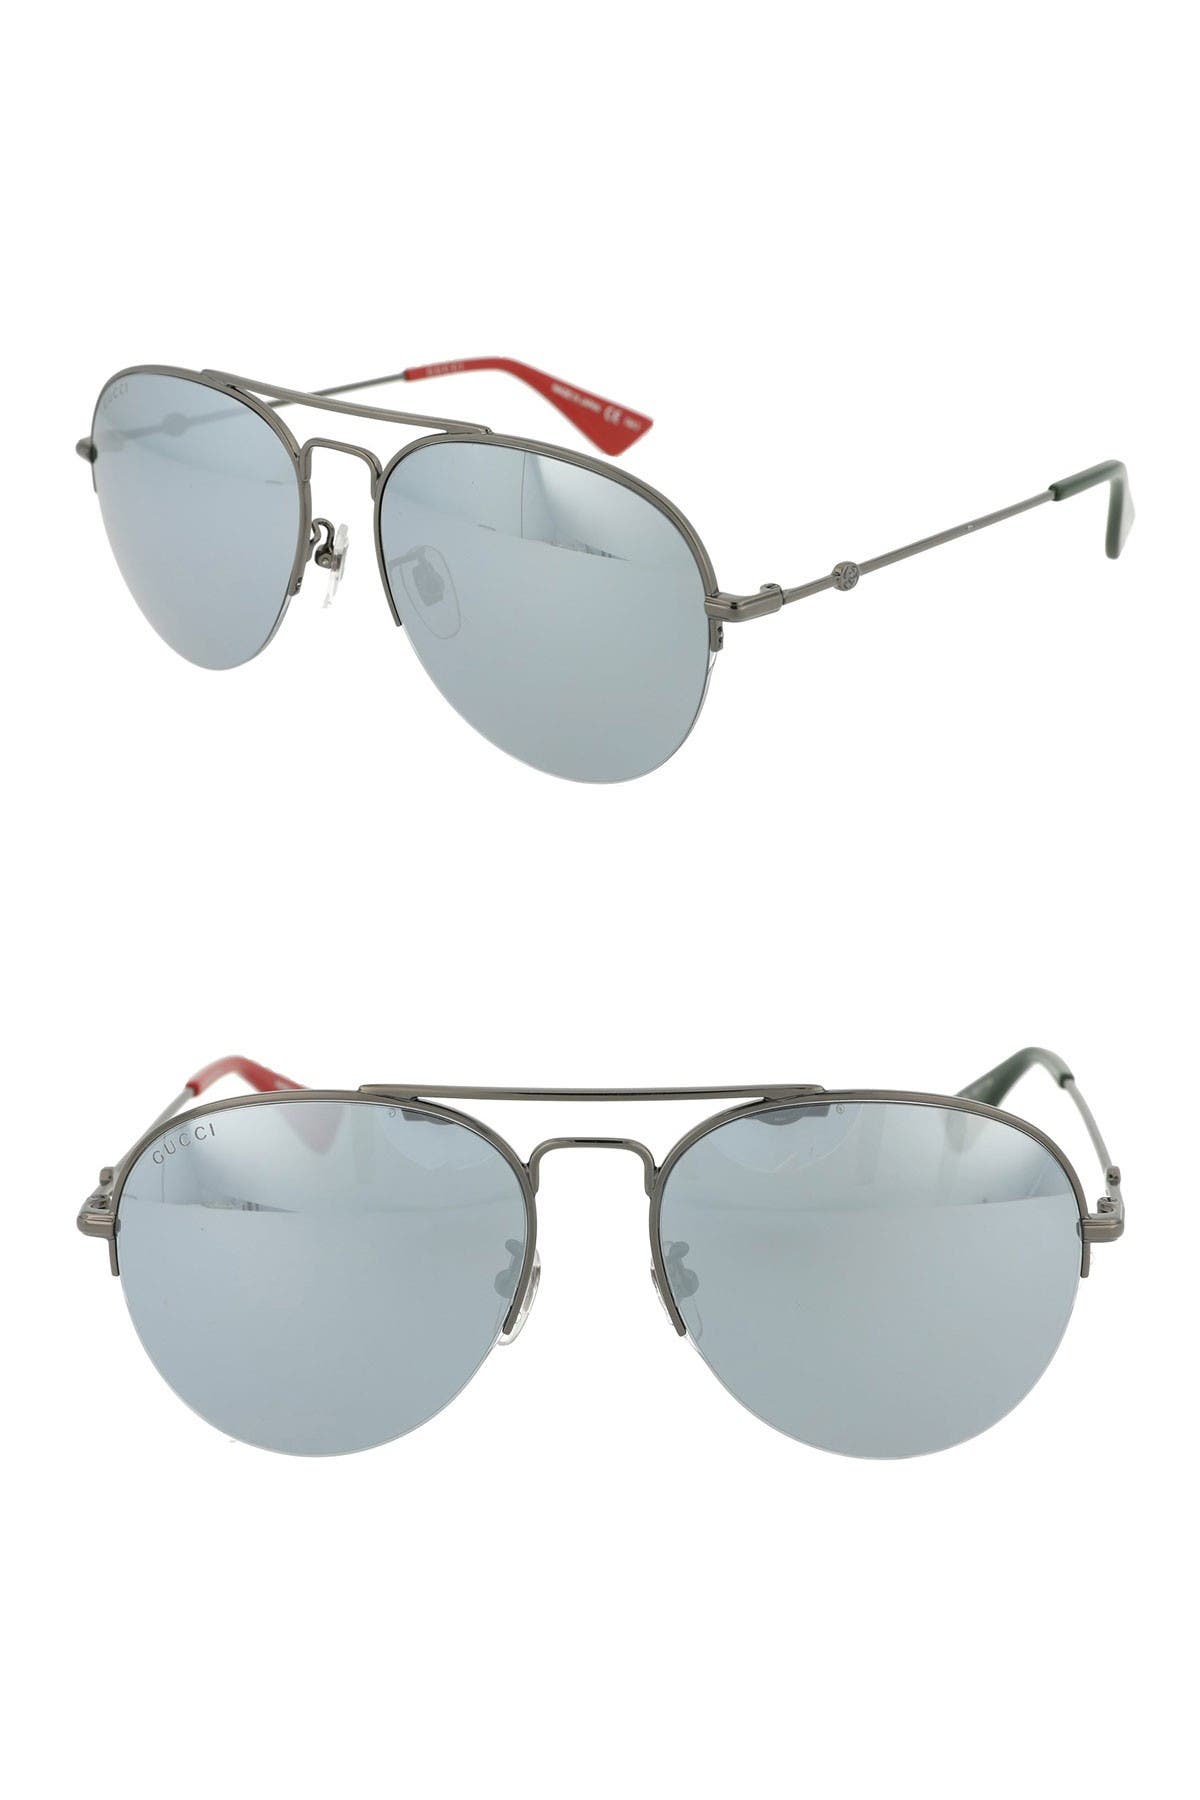 nordstrom gucci sunglasses